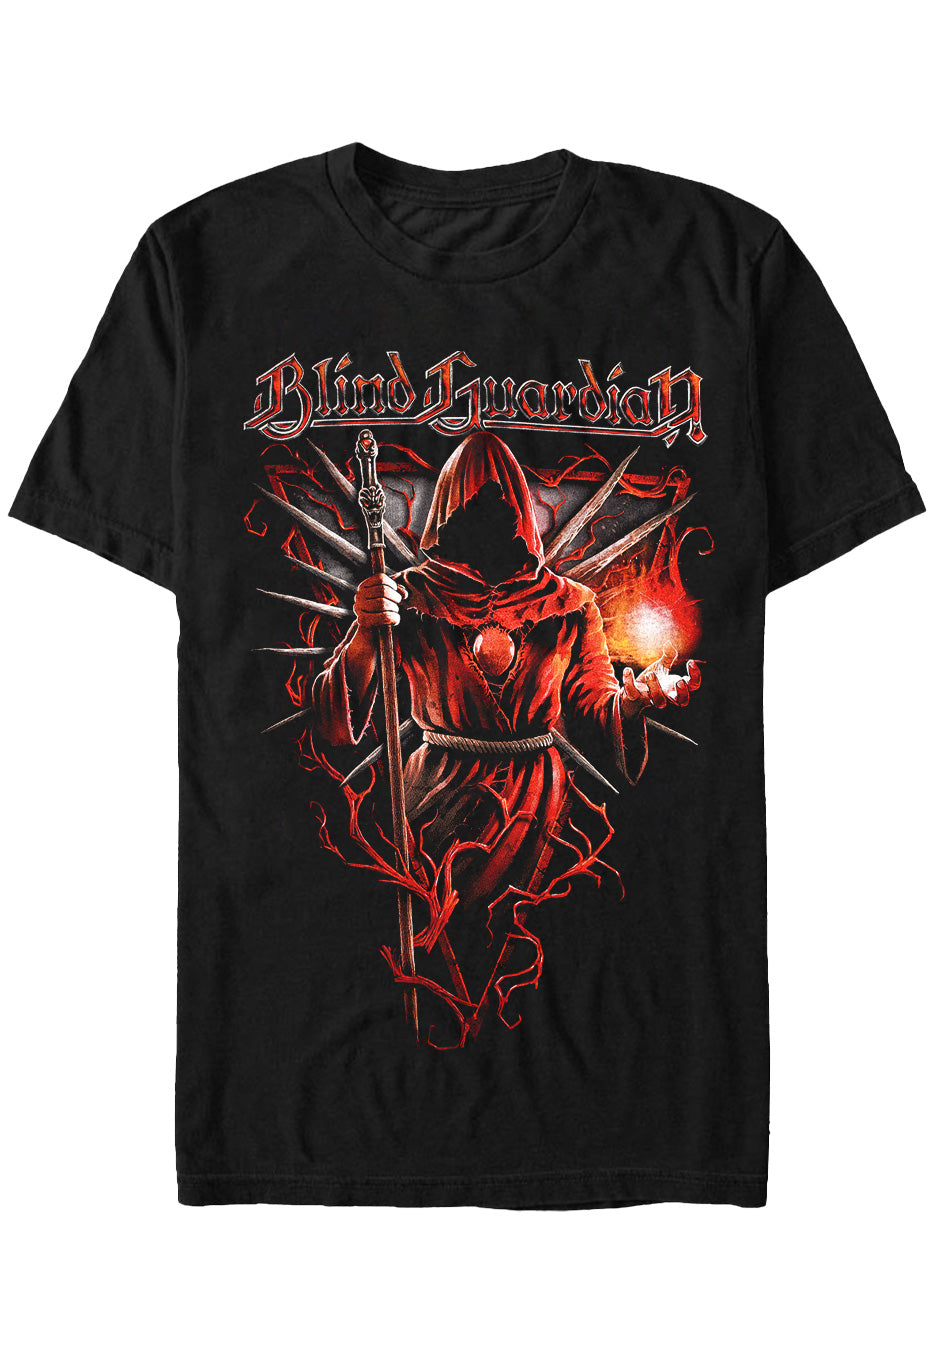 Blind Guardian - Sacrament - T-Shirt